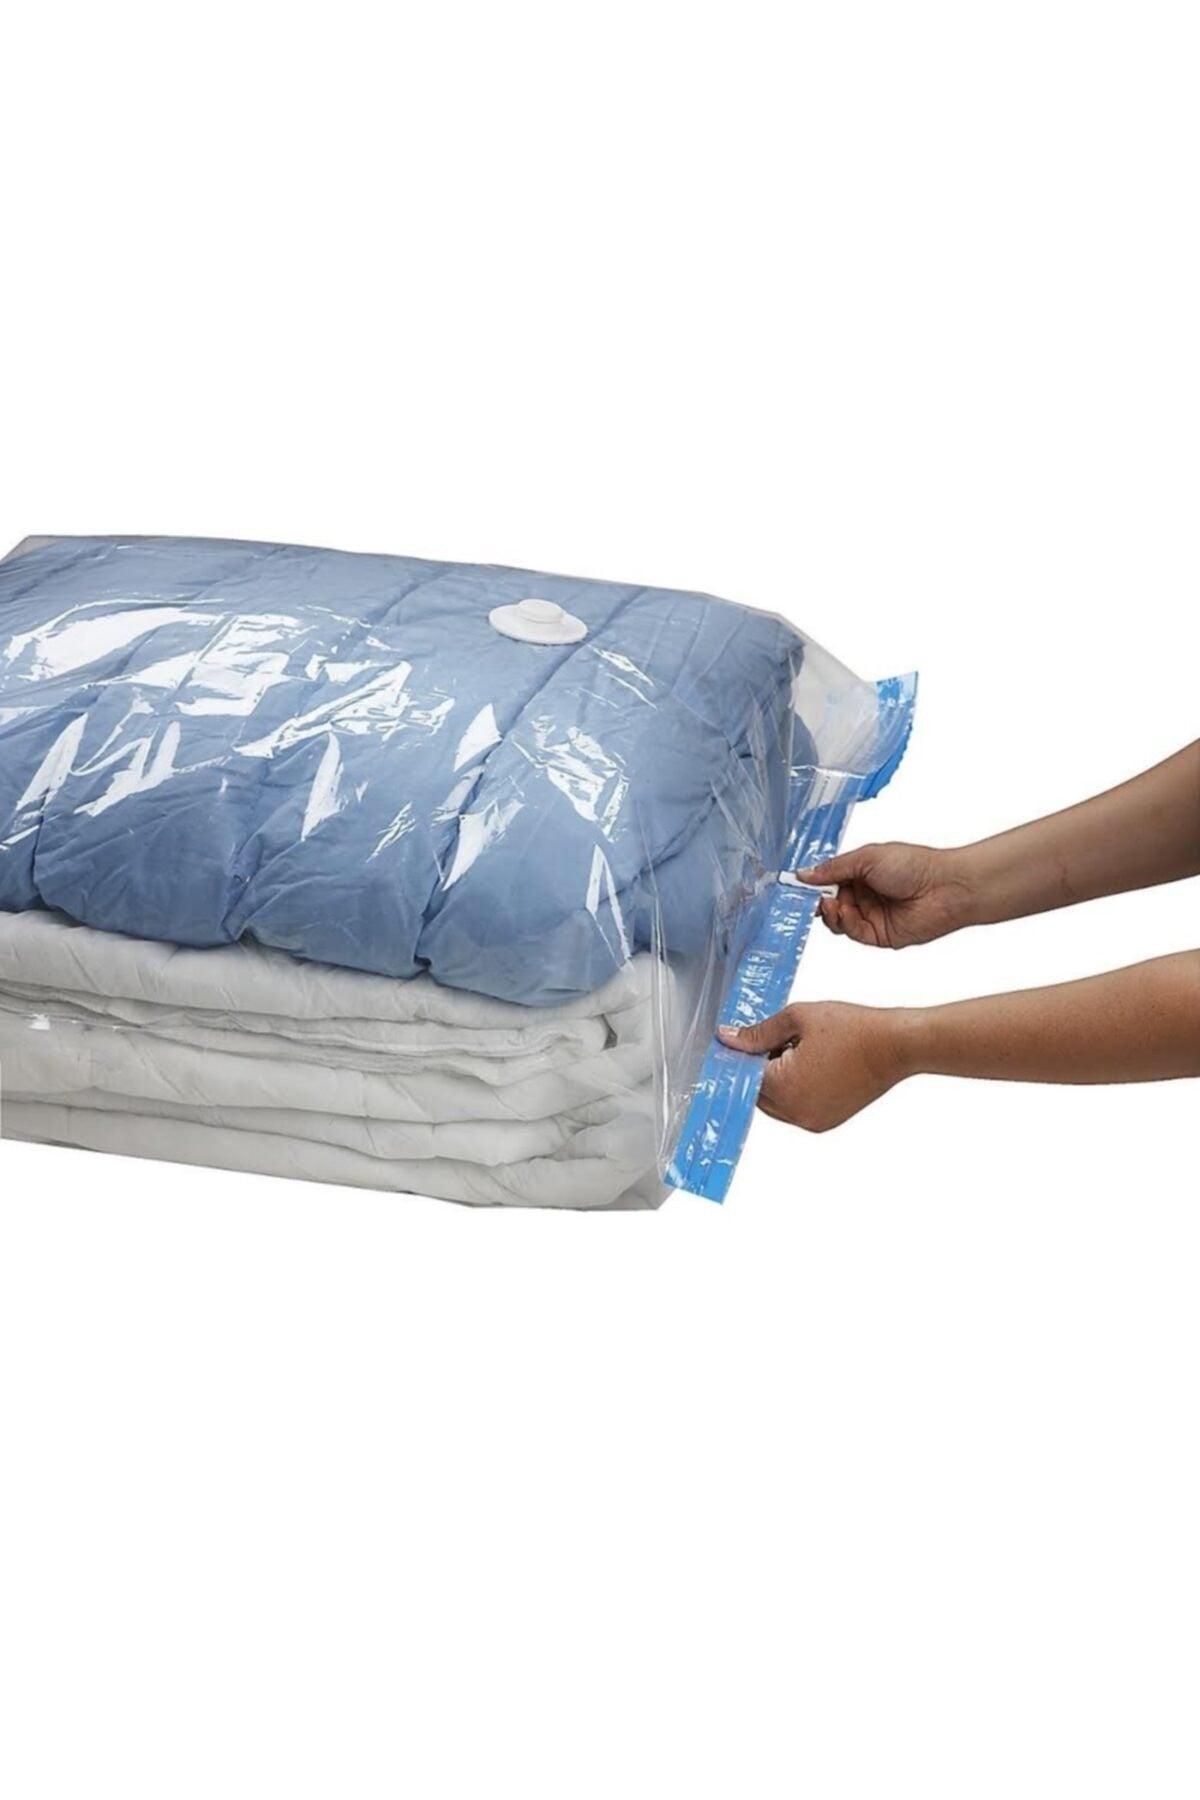 Marufmarket 7 Pcs Vacuum Storage Bag Set-4 (pillow - Clothes - Blanket-quilt Scrap) Vacuumhurcu - Swordslife